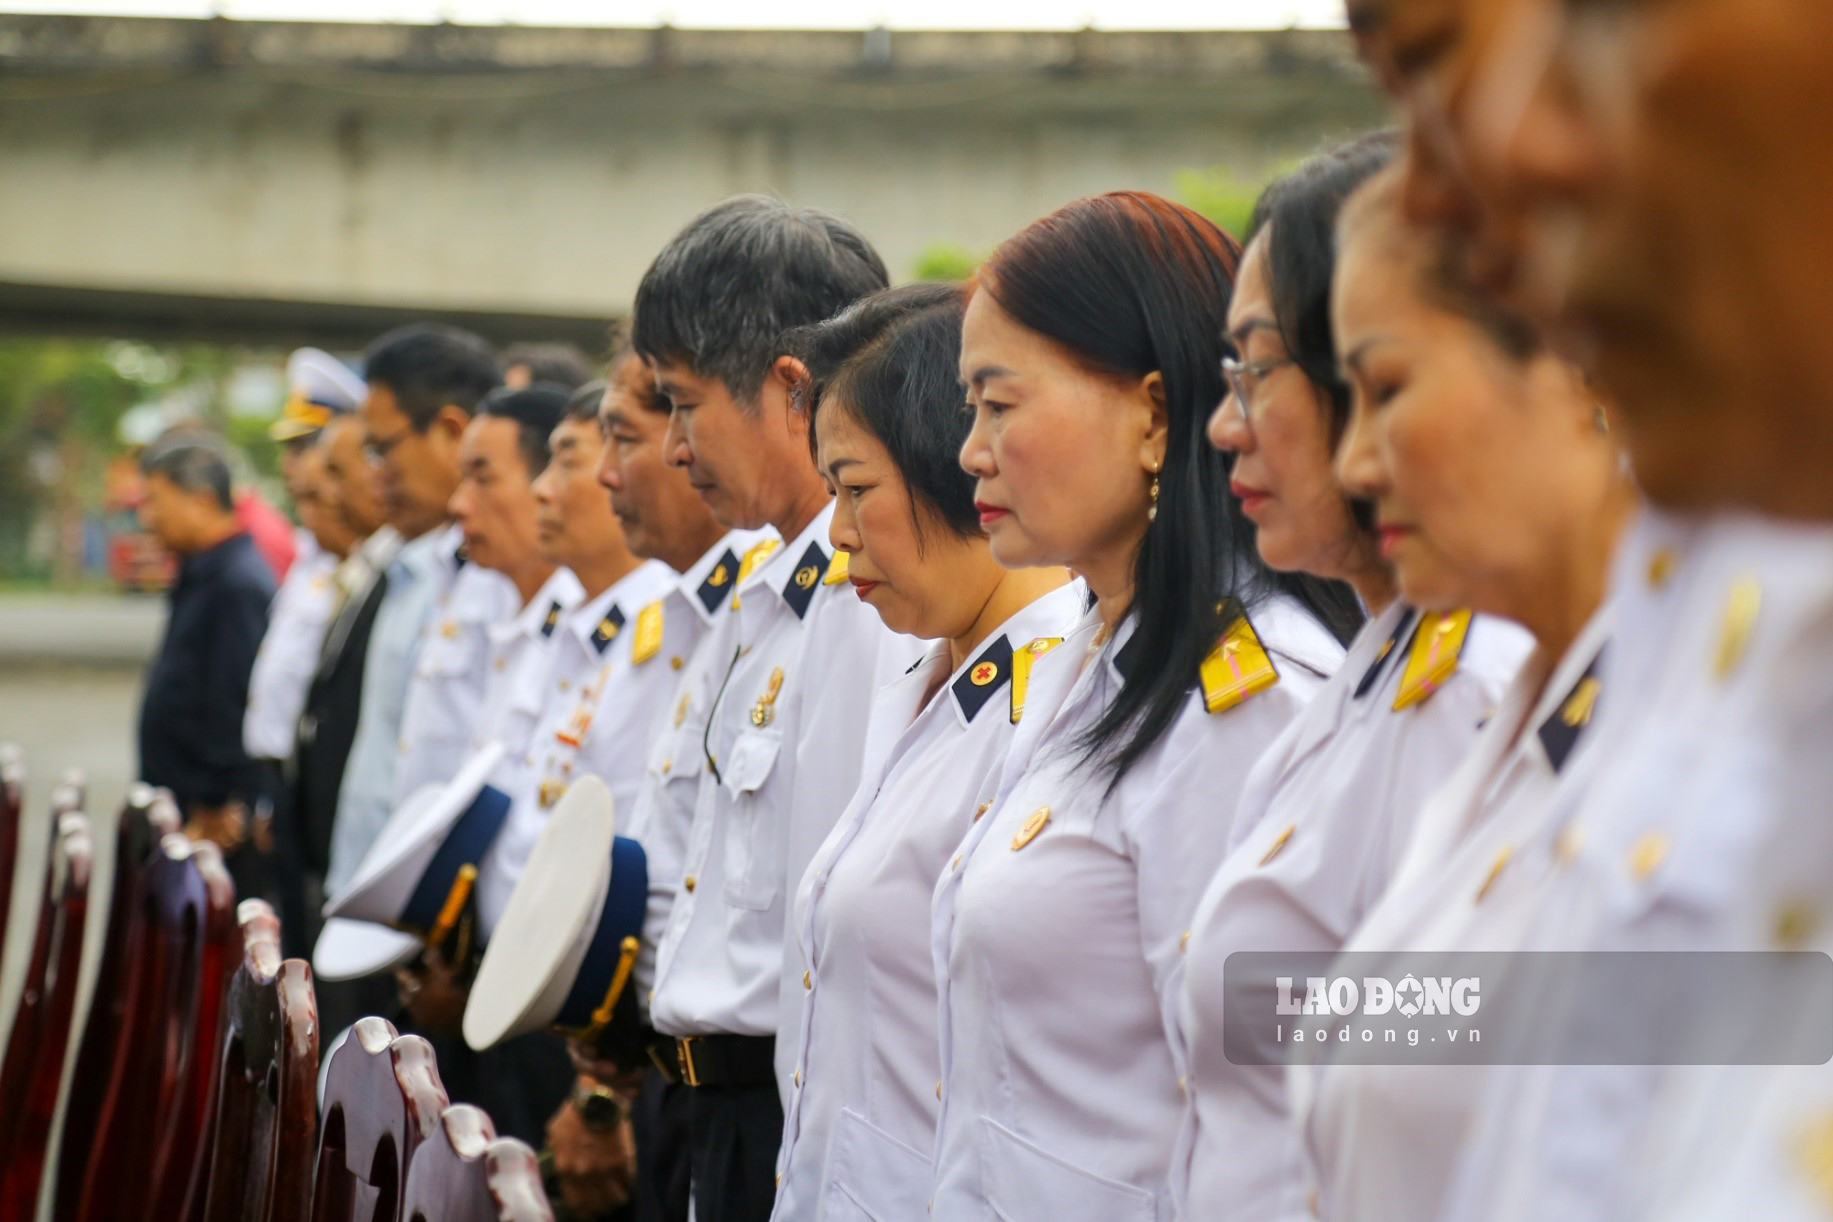 Buổi lễ tưởng niệm với sự tham dự của các người thân, đồng đội 9 liệt sĩ Gạc Ma ở Đà Nẵng. Họ cùng nhau có mặt để tưởng niệm 64 liệt sĩ đã anh dũng hi sinh vì chủ quyền biển đảo Tổ quốc thiêng liêng.